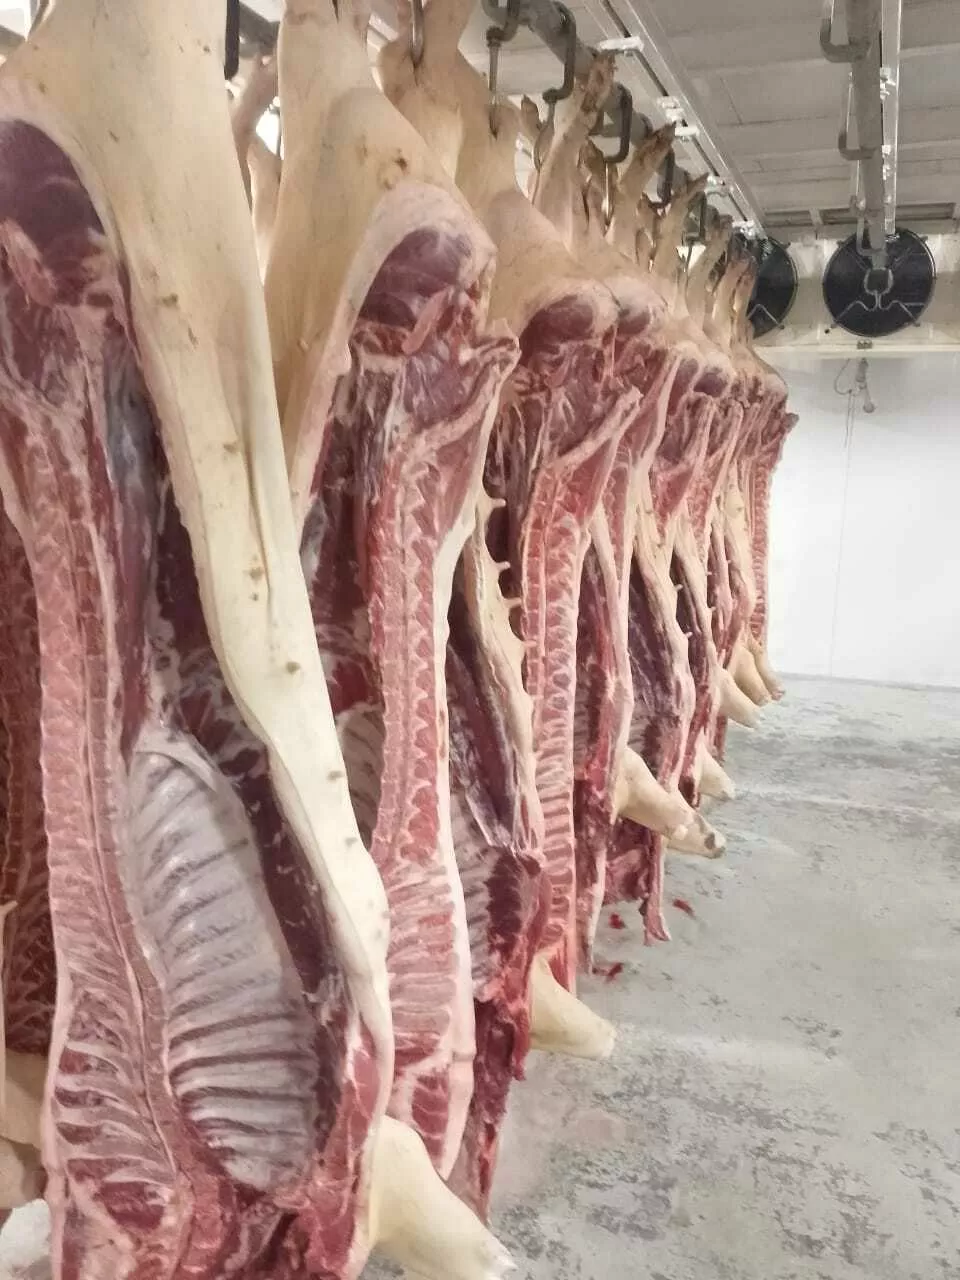 мясо свинины оптом и в розницу в Краснодаре и Краснодарском крае